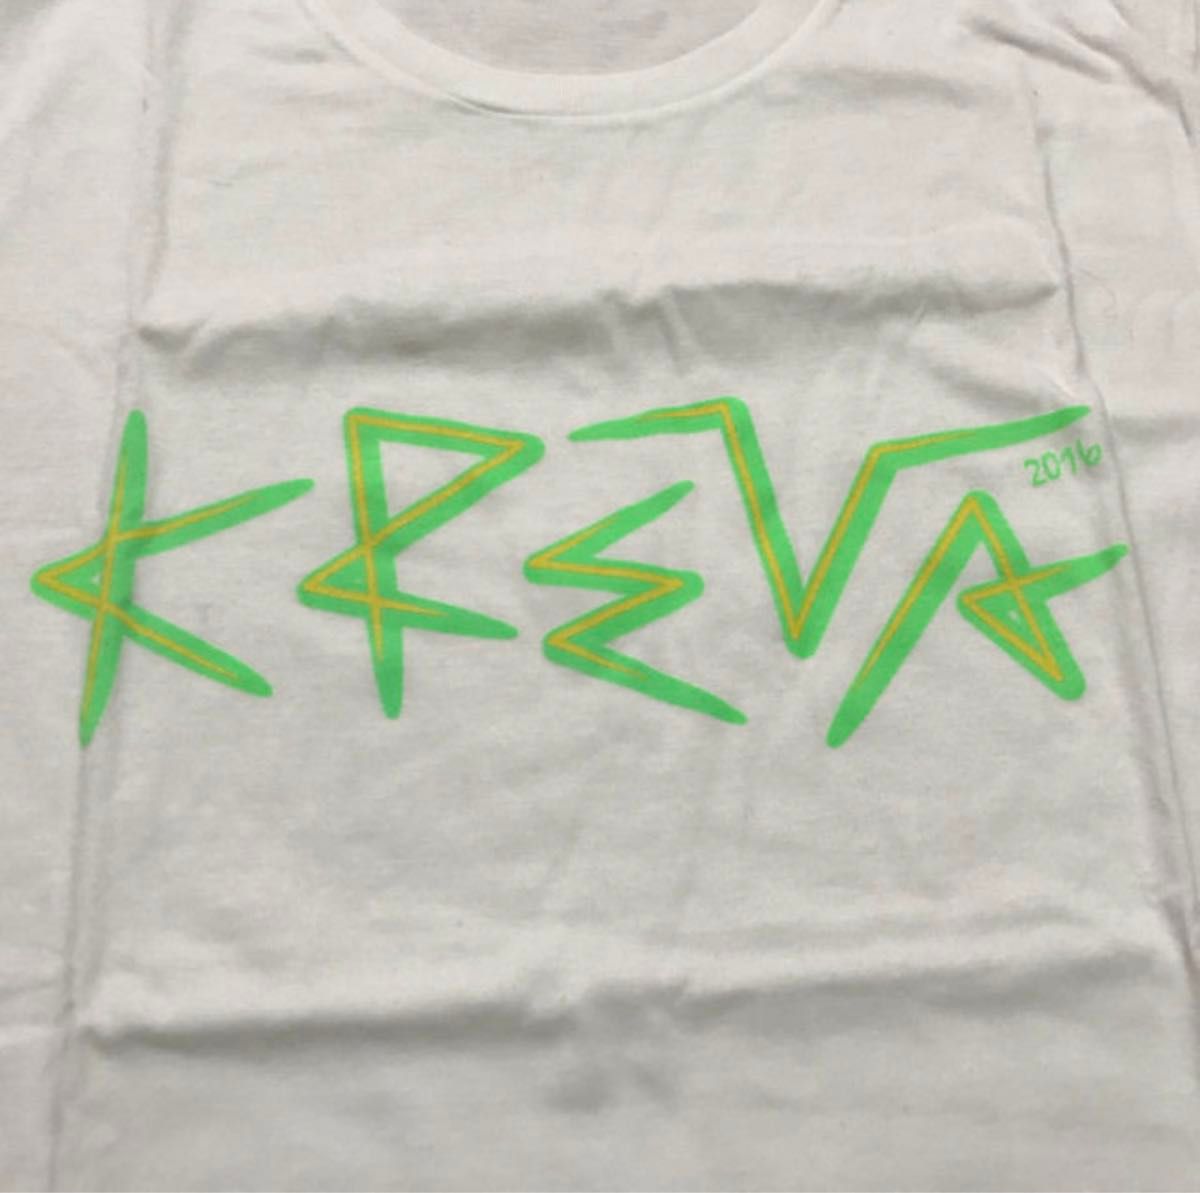 KREVA 2016 Tシャツ 新品 XSサイズ